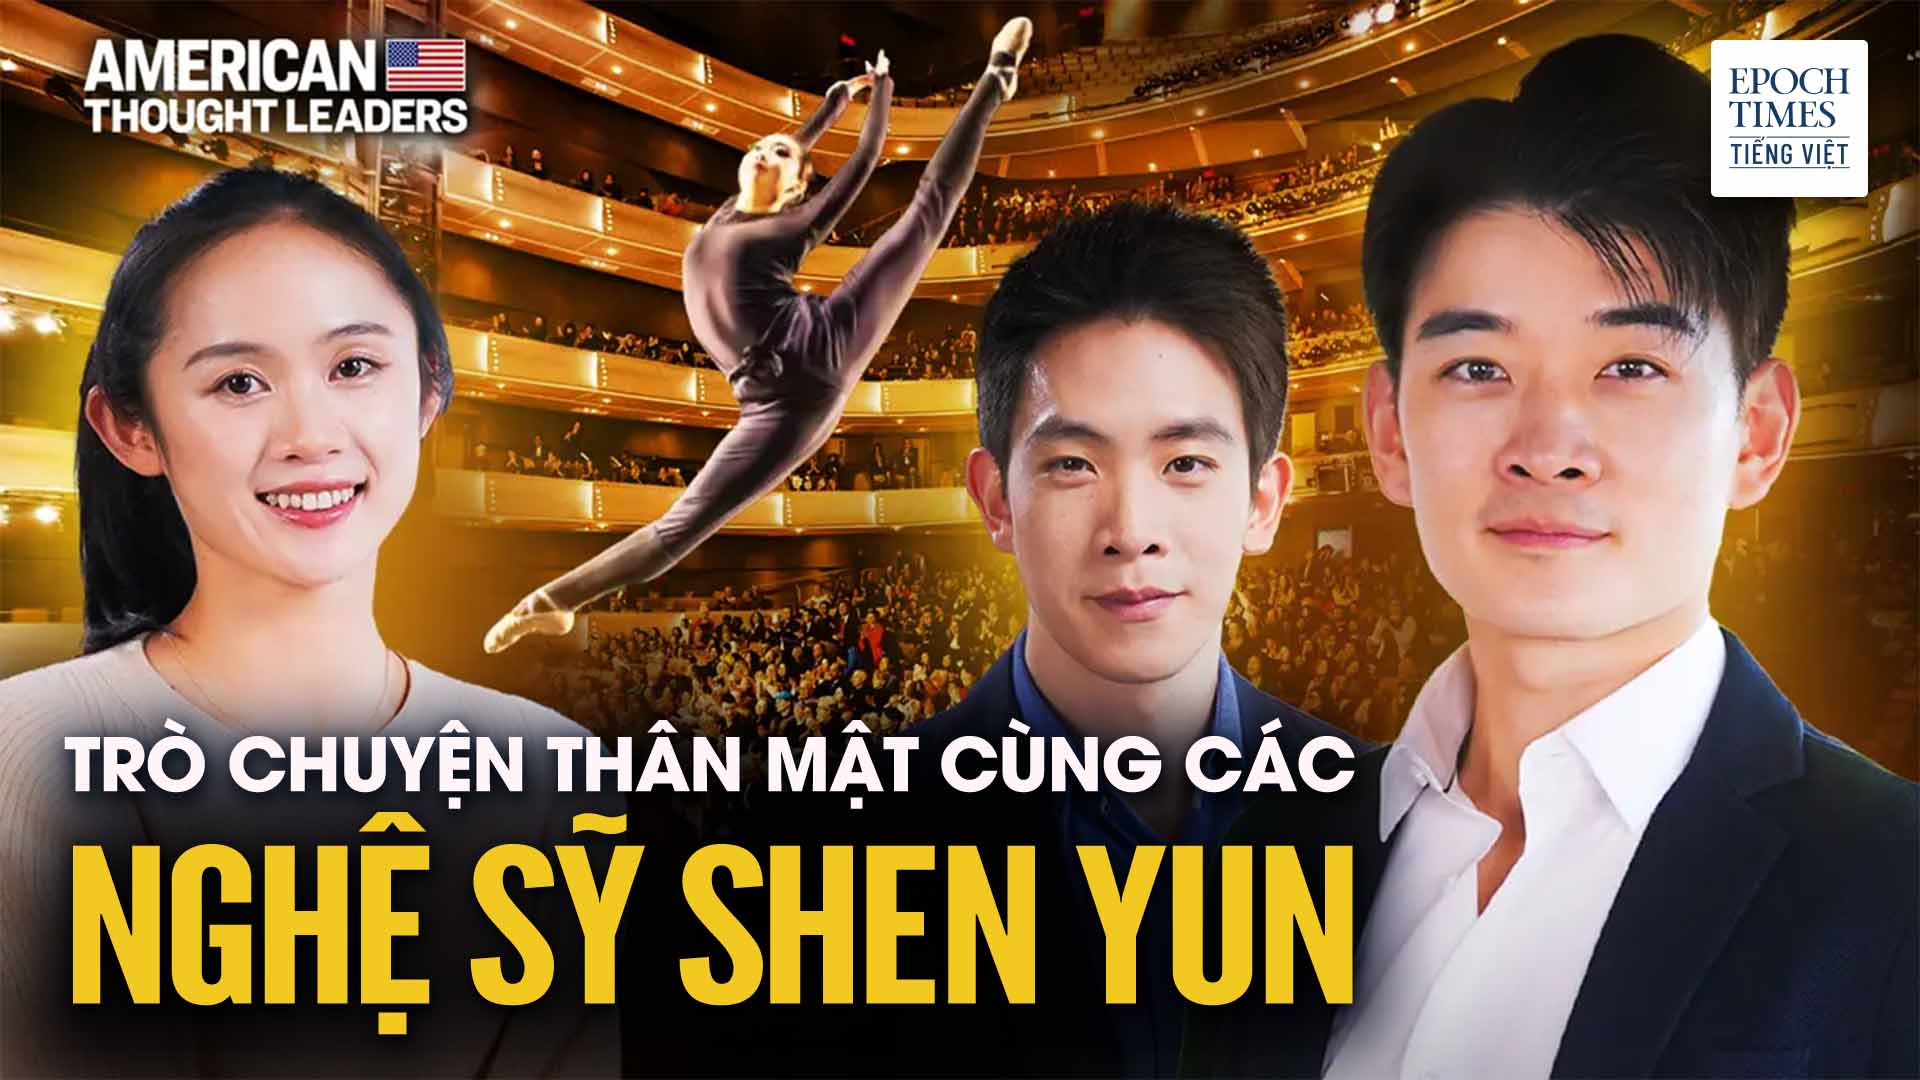 Phỏng vấn nội bộ, độc quyền về Nghệ thuật Biểu diễn Shen Yun | Tập đặc biệt